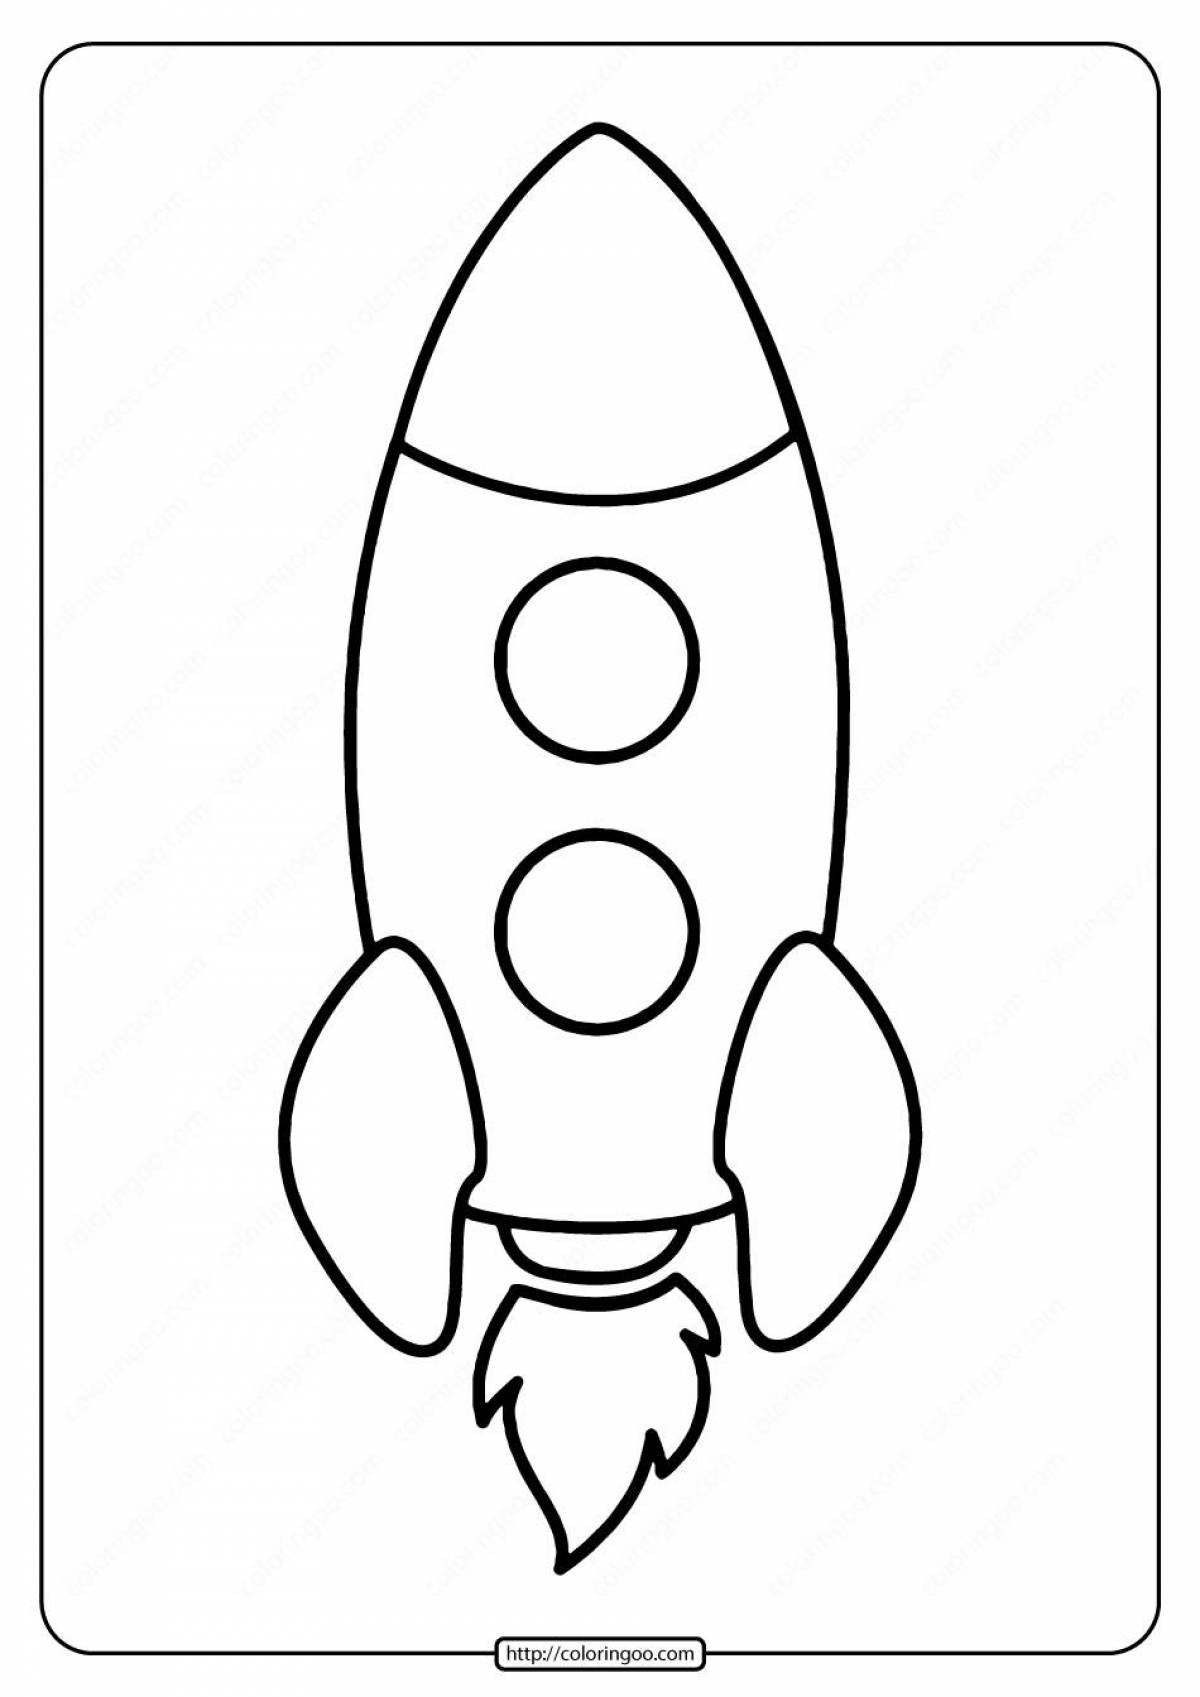 Чудесная ракета-раскраска для детей